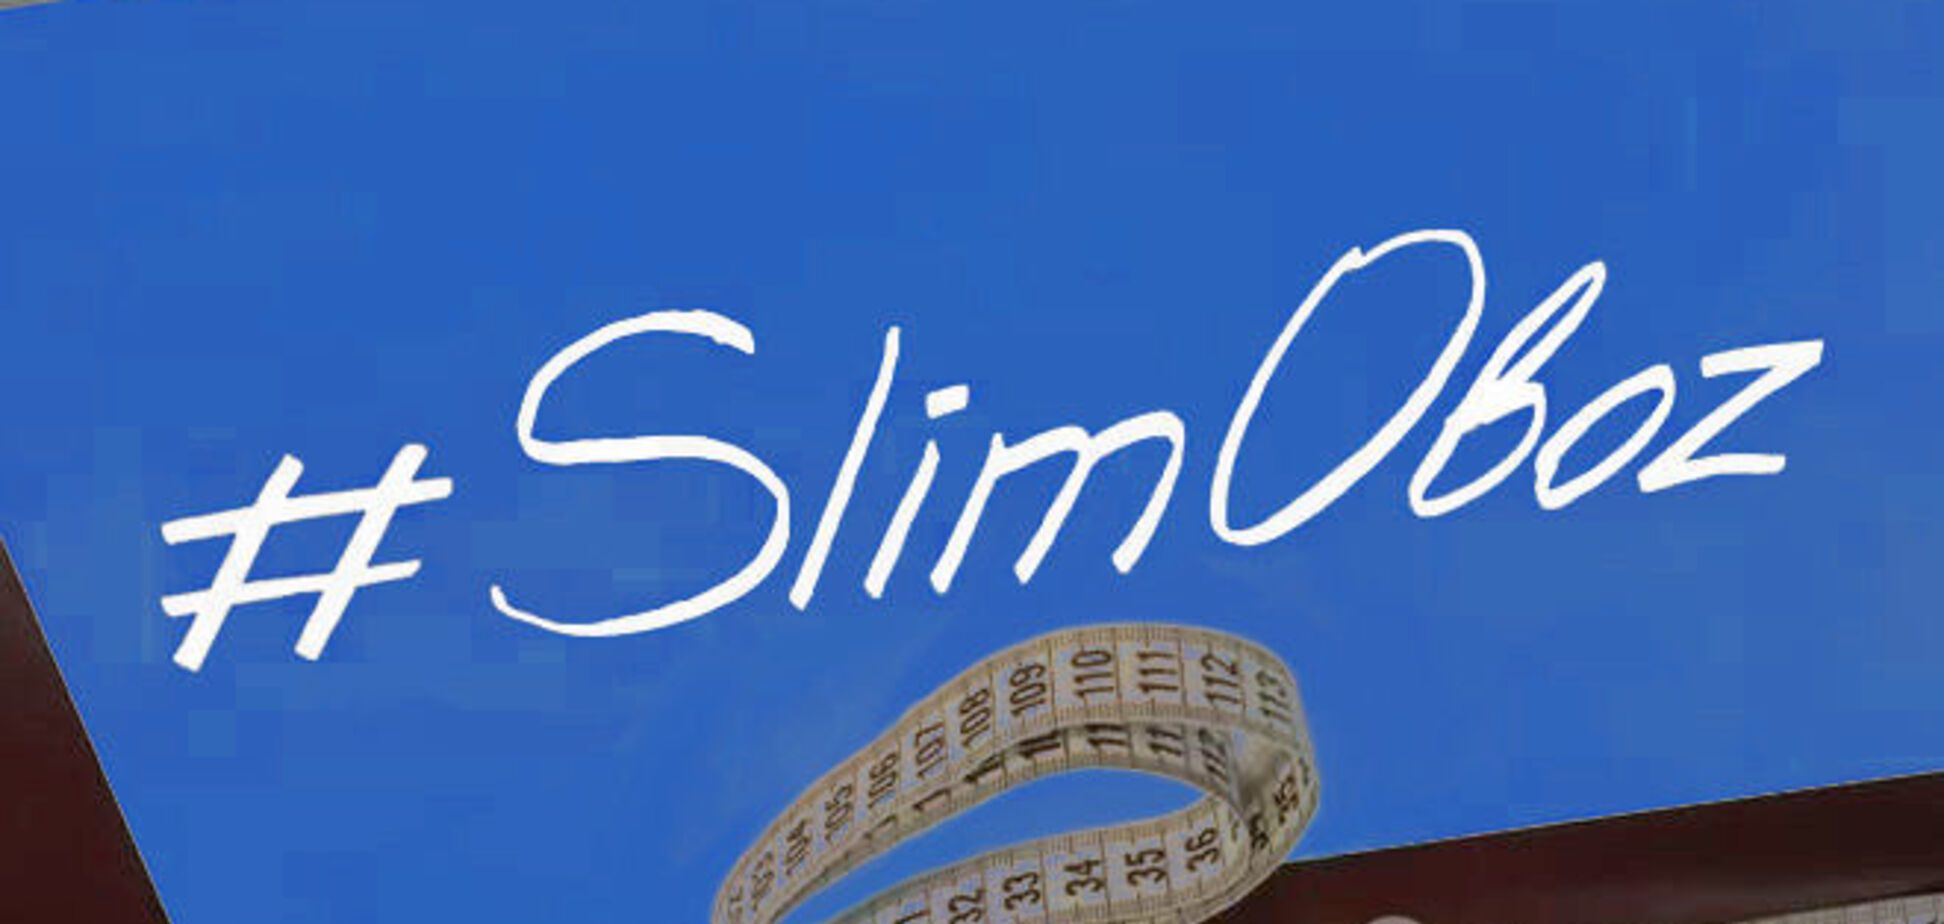 #SlimOboz. Щоденник схуднення офісного співробітника. Відеозвіт за перший тиждень